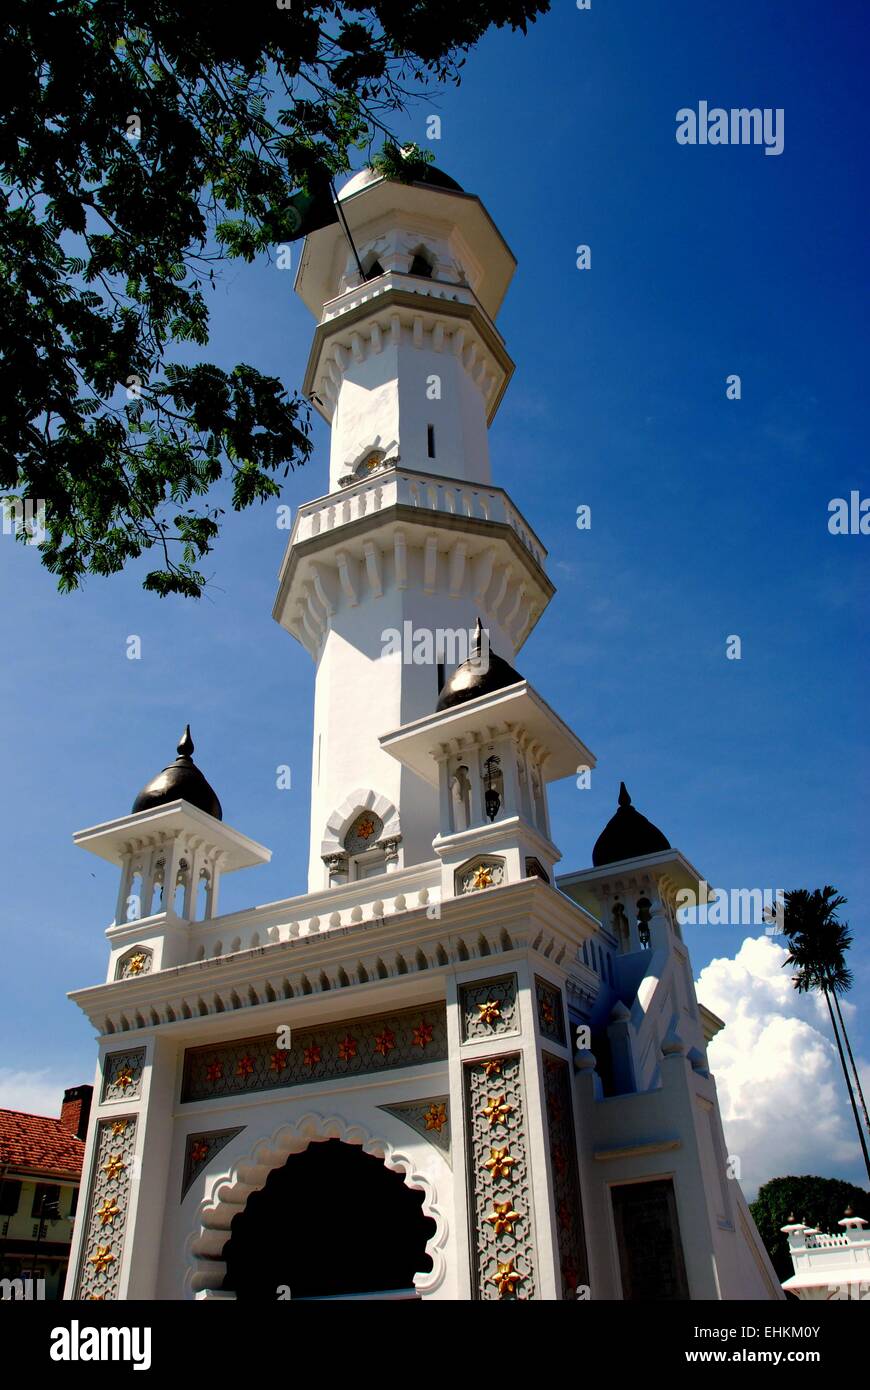 Georgetown, Malaysia: Tor und Minarett Eingangsturm verwendet, um die Gläubigen zum Gebet rufen an c. 1798 Kapitane Keling Moschee Stockfoto